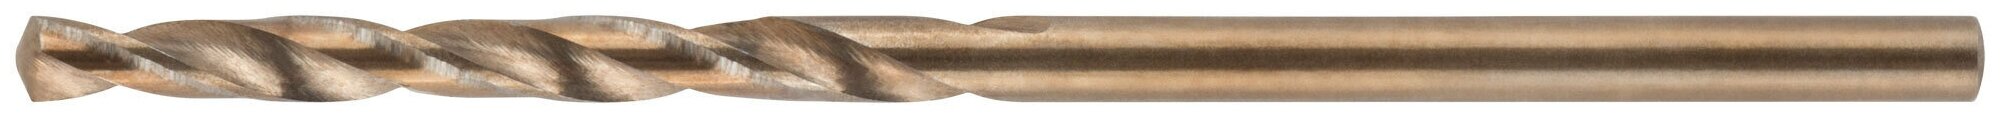 Сверло по металлу Cutop Profi с кобальтом 5% 2,5 x 57 мм, 2 шт. 48-359